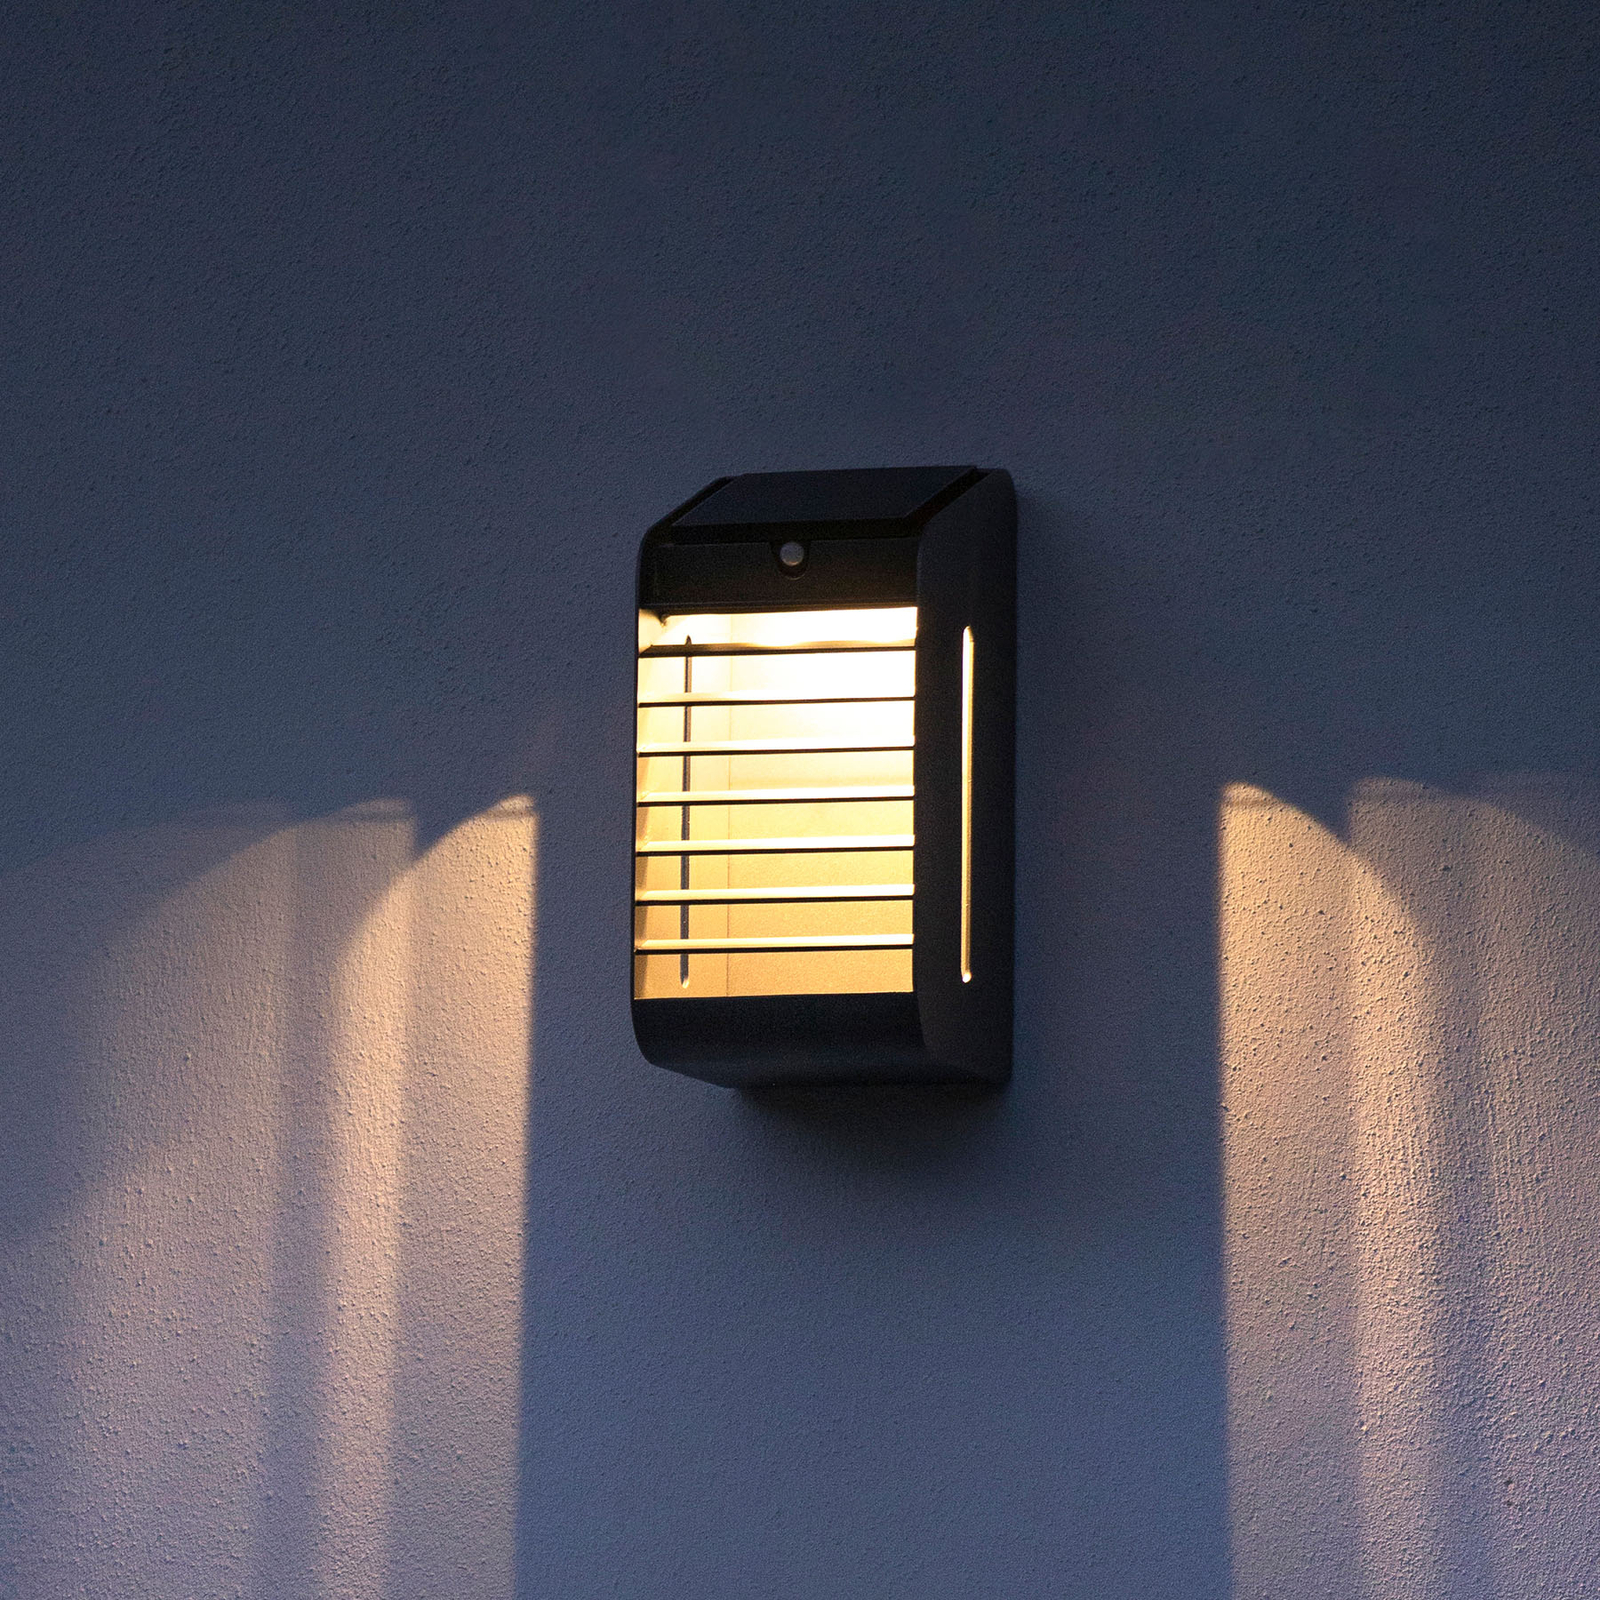 Kampinis LED saulės sieninis šviestuvas su jutikliu, pilkos spalvos